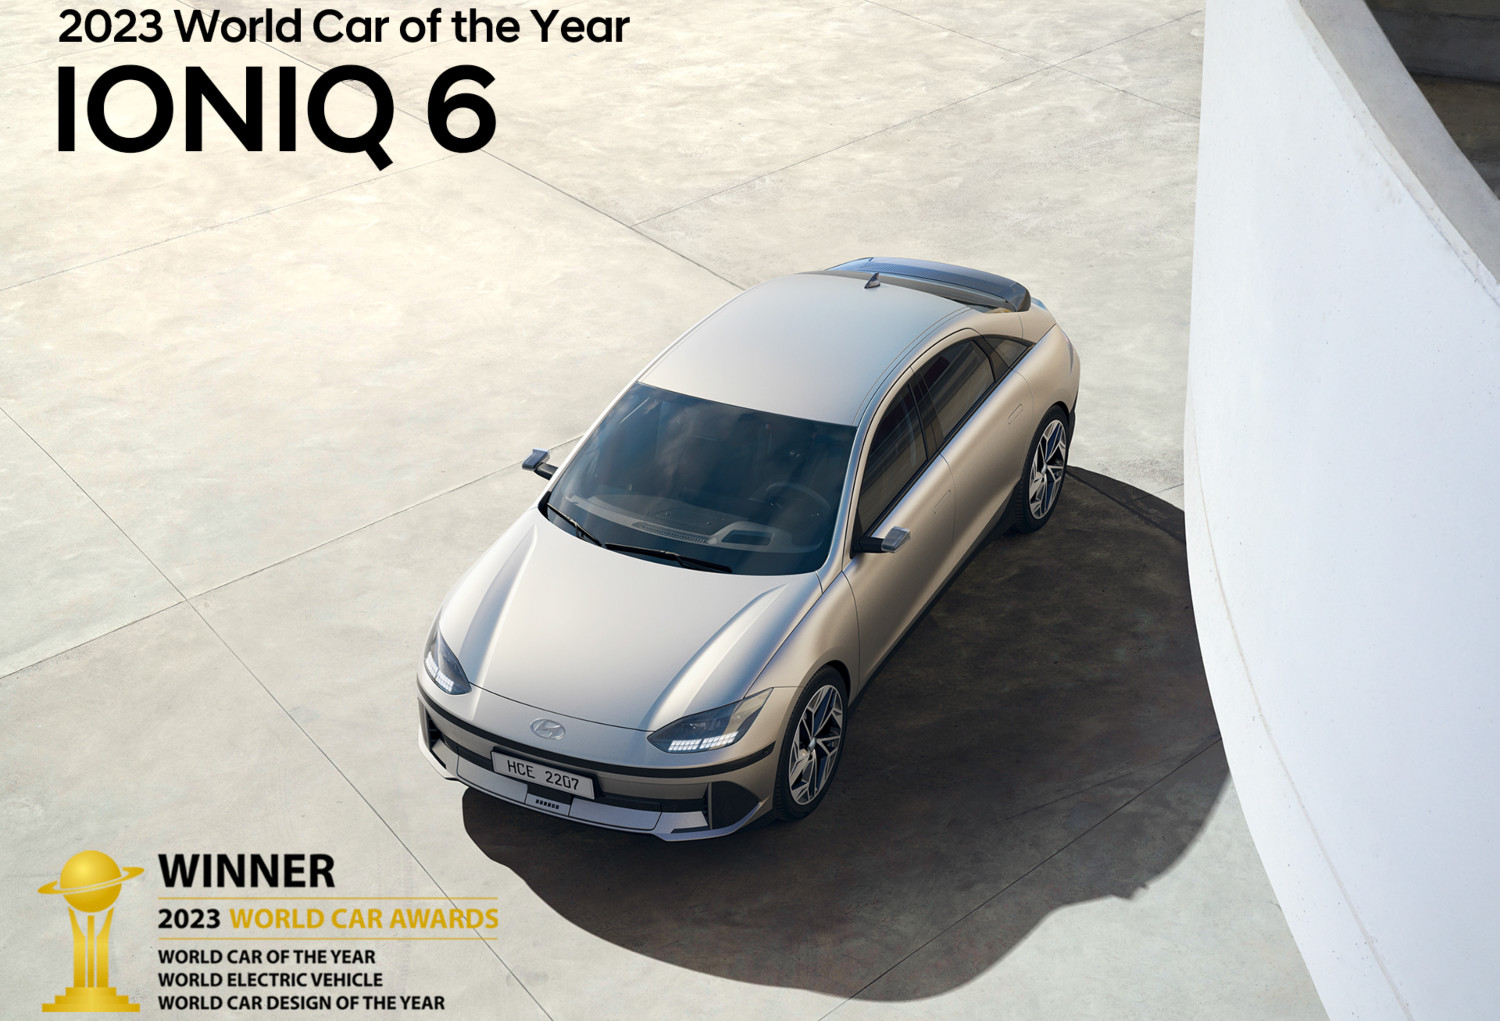 O Hyundai Ioniq 6 não se limitou a conquistar a distinção de 'World Car of the Year 2022', como arrecadou os restantes galardões para os quais estava nomeado